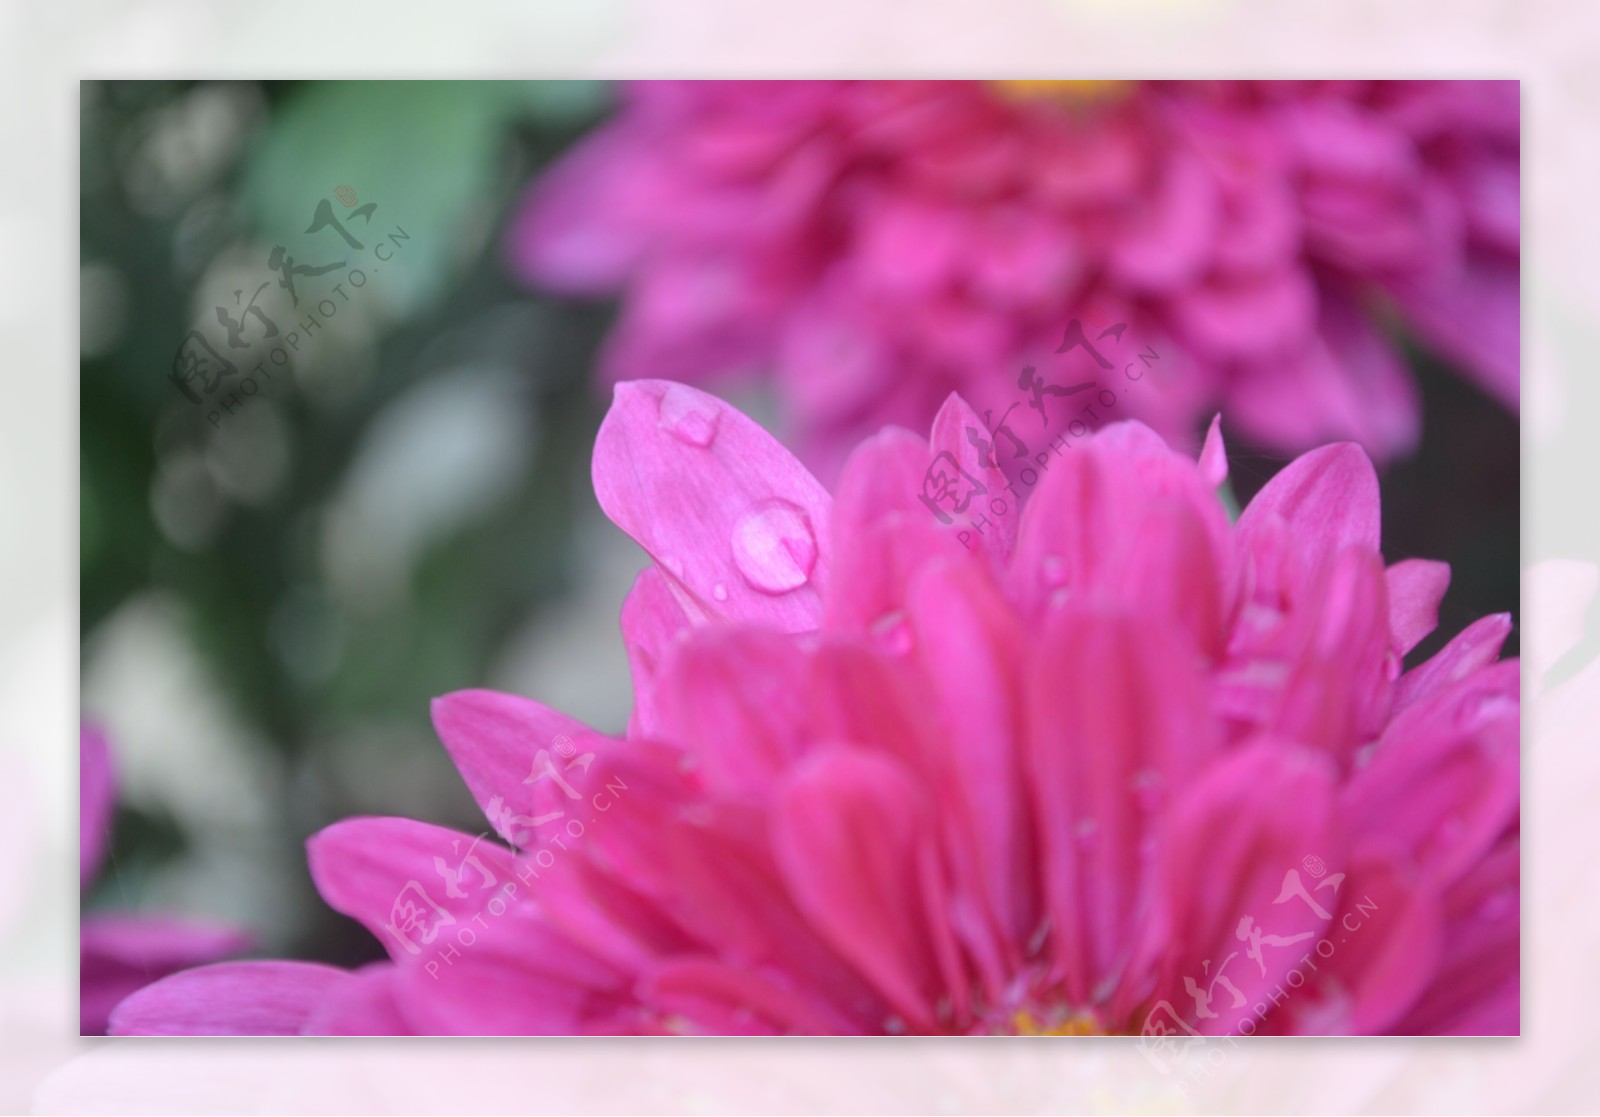 露水菊花花瓣图片